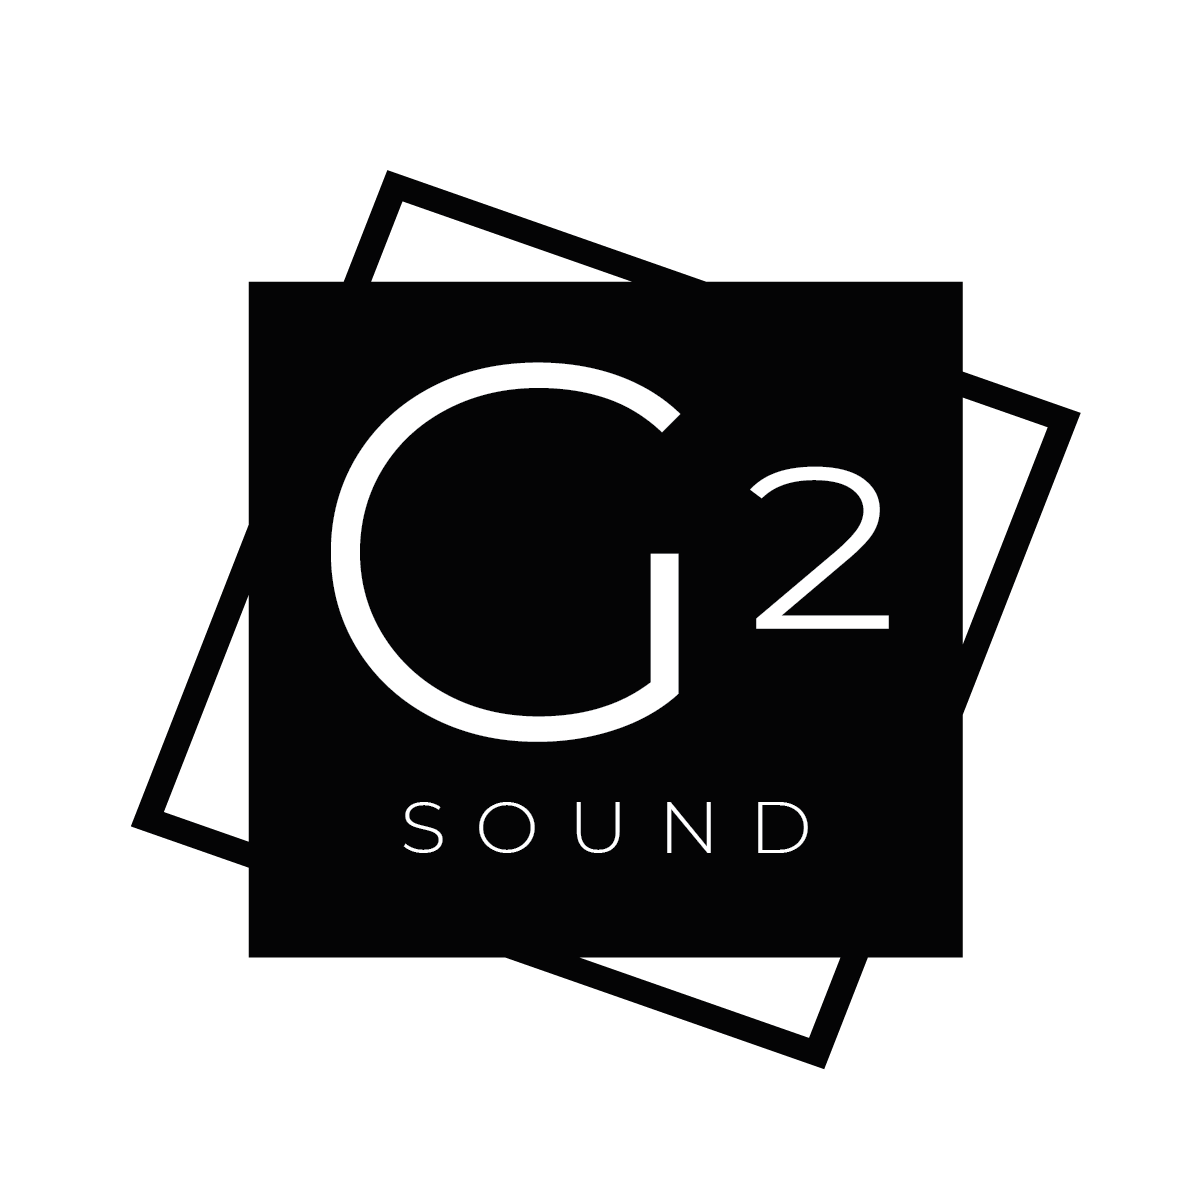 G2 SOUND